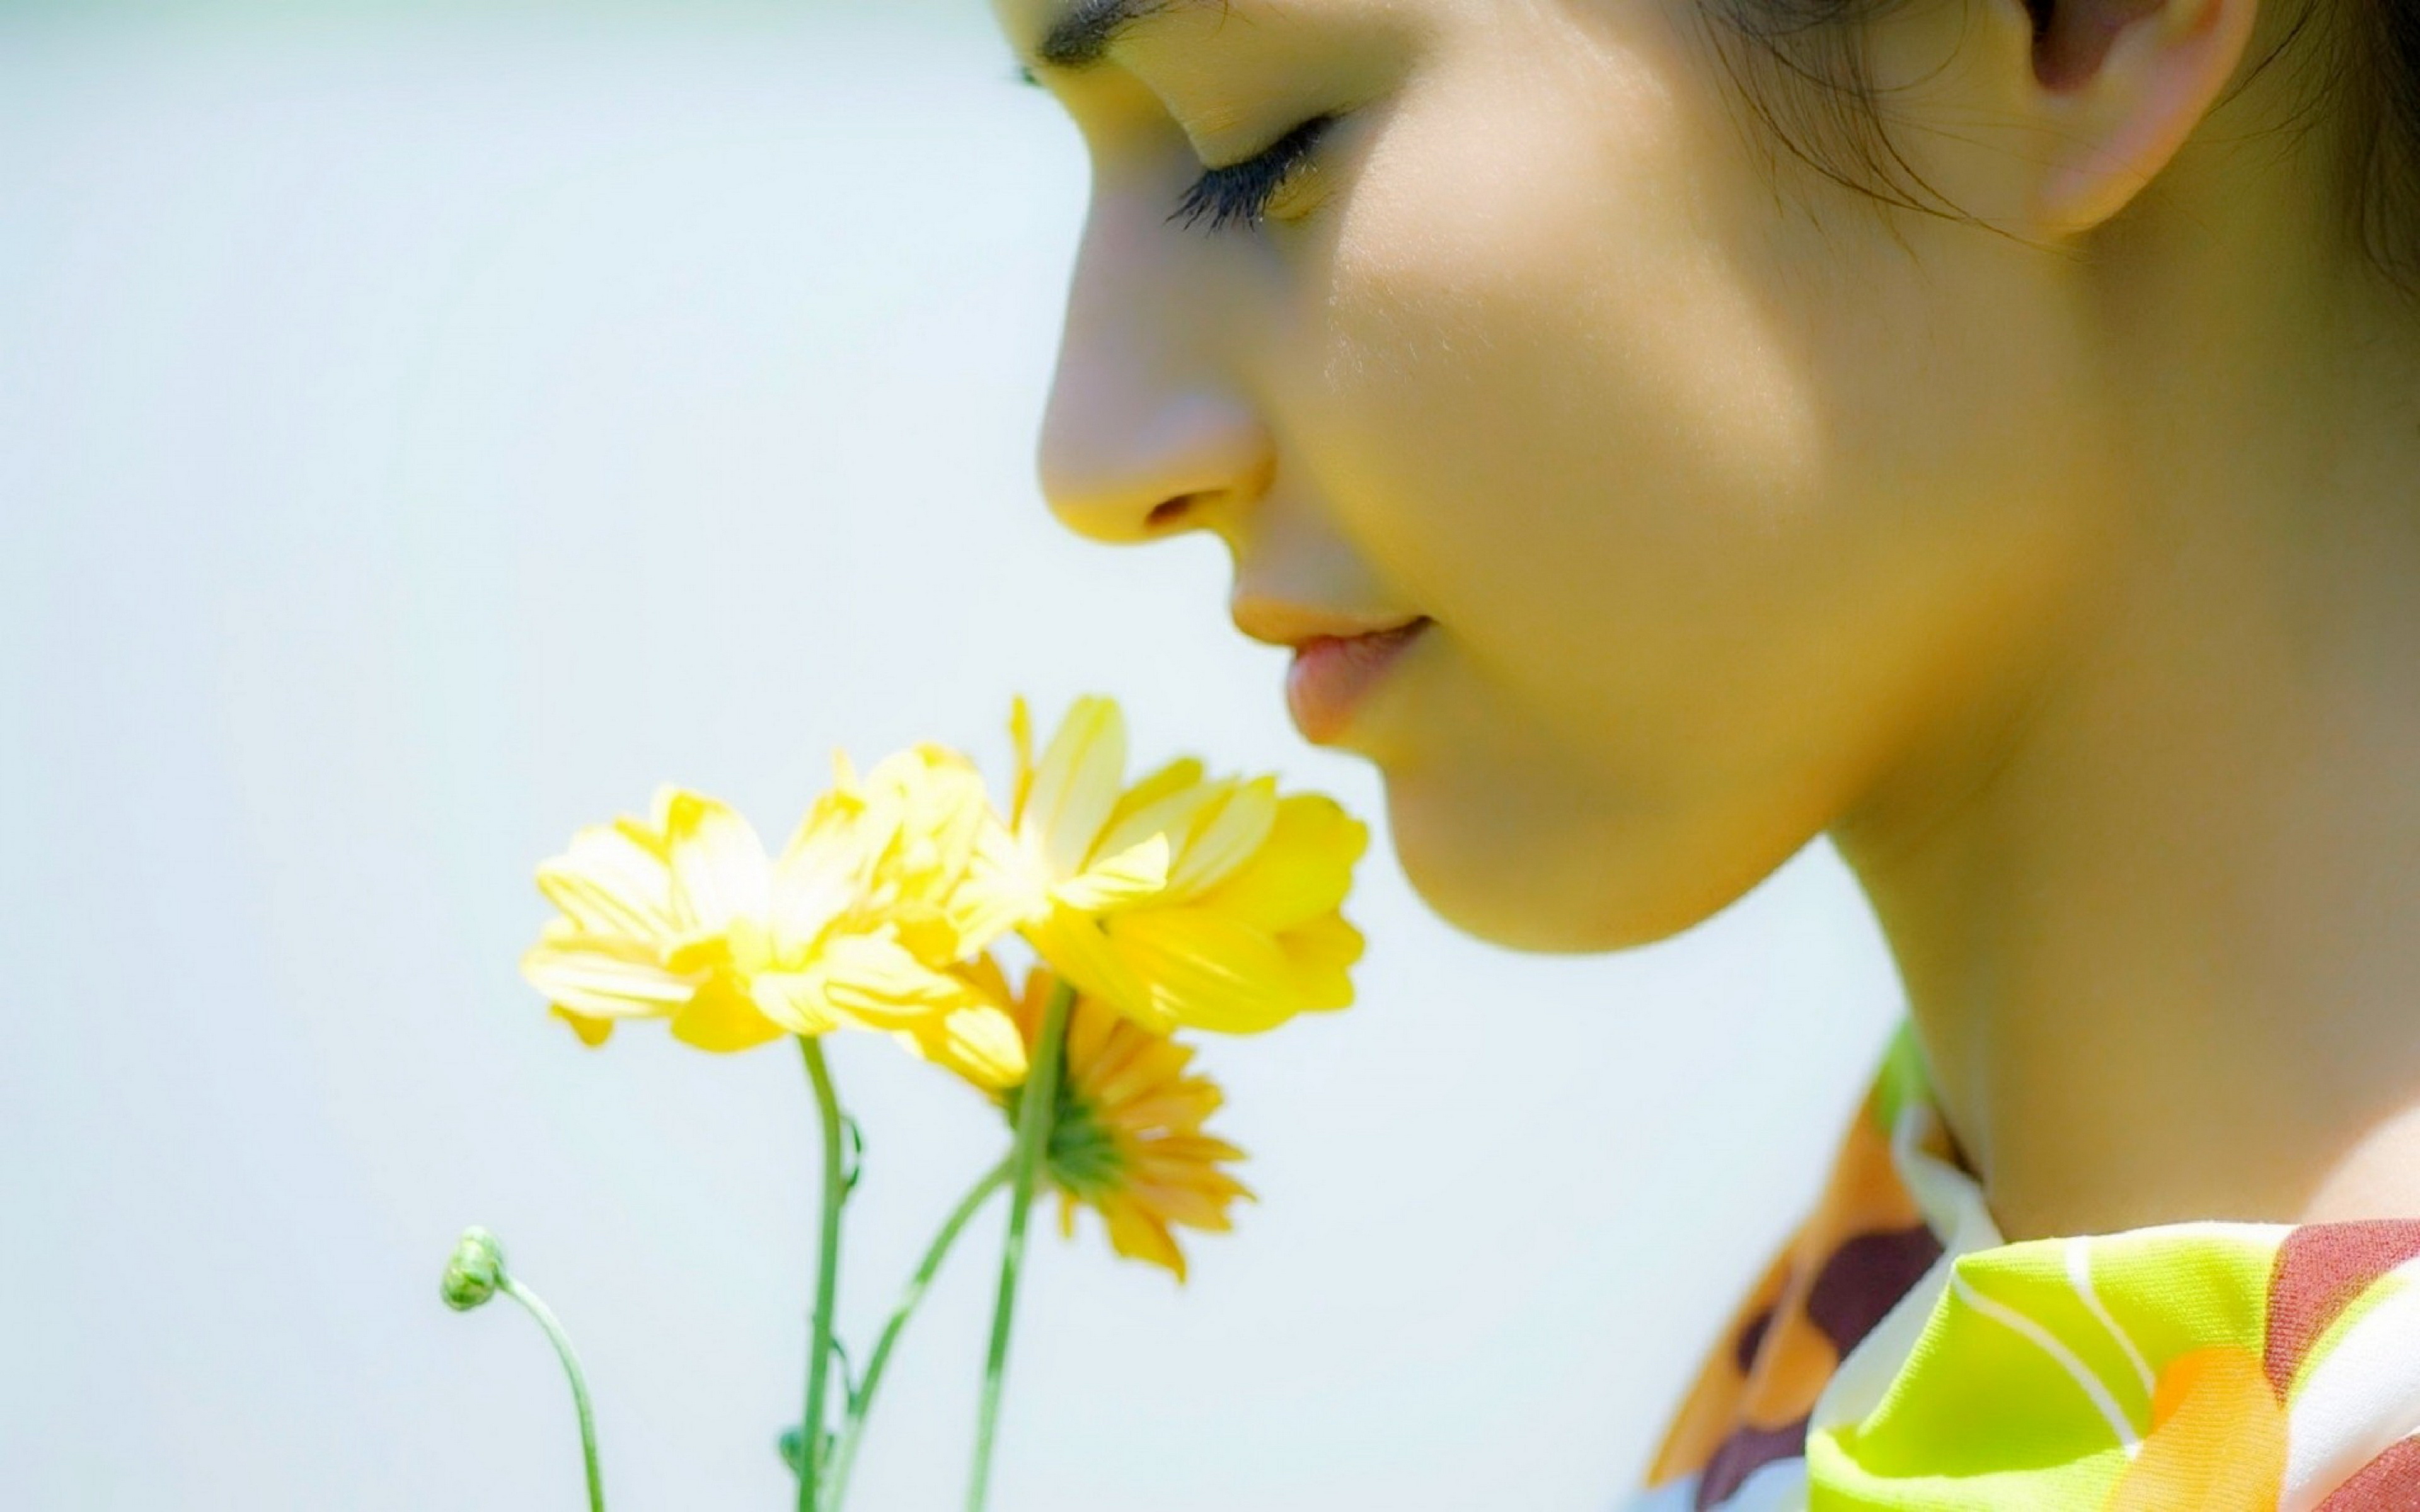 Обонятельное чувство. Обоняние. Девушка нюхает цветы. Приятный запах цветов. Человек с цветами.